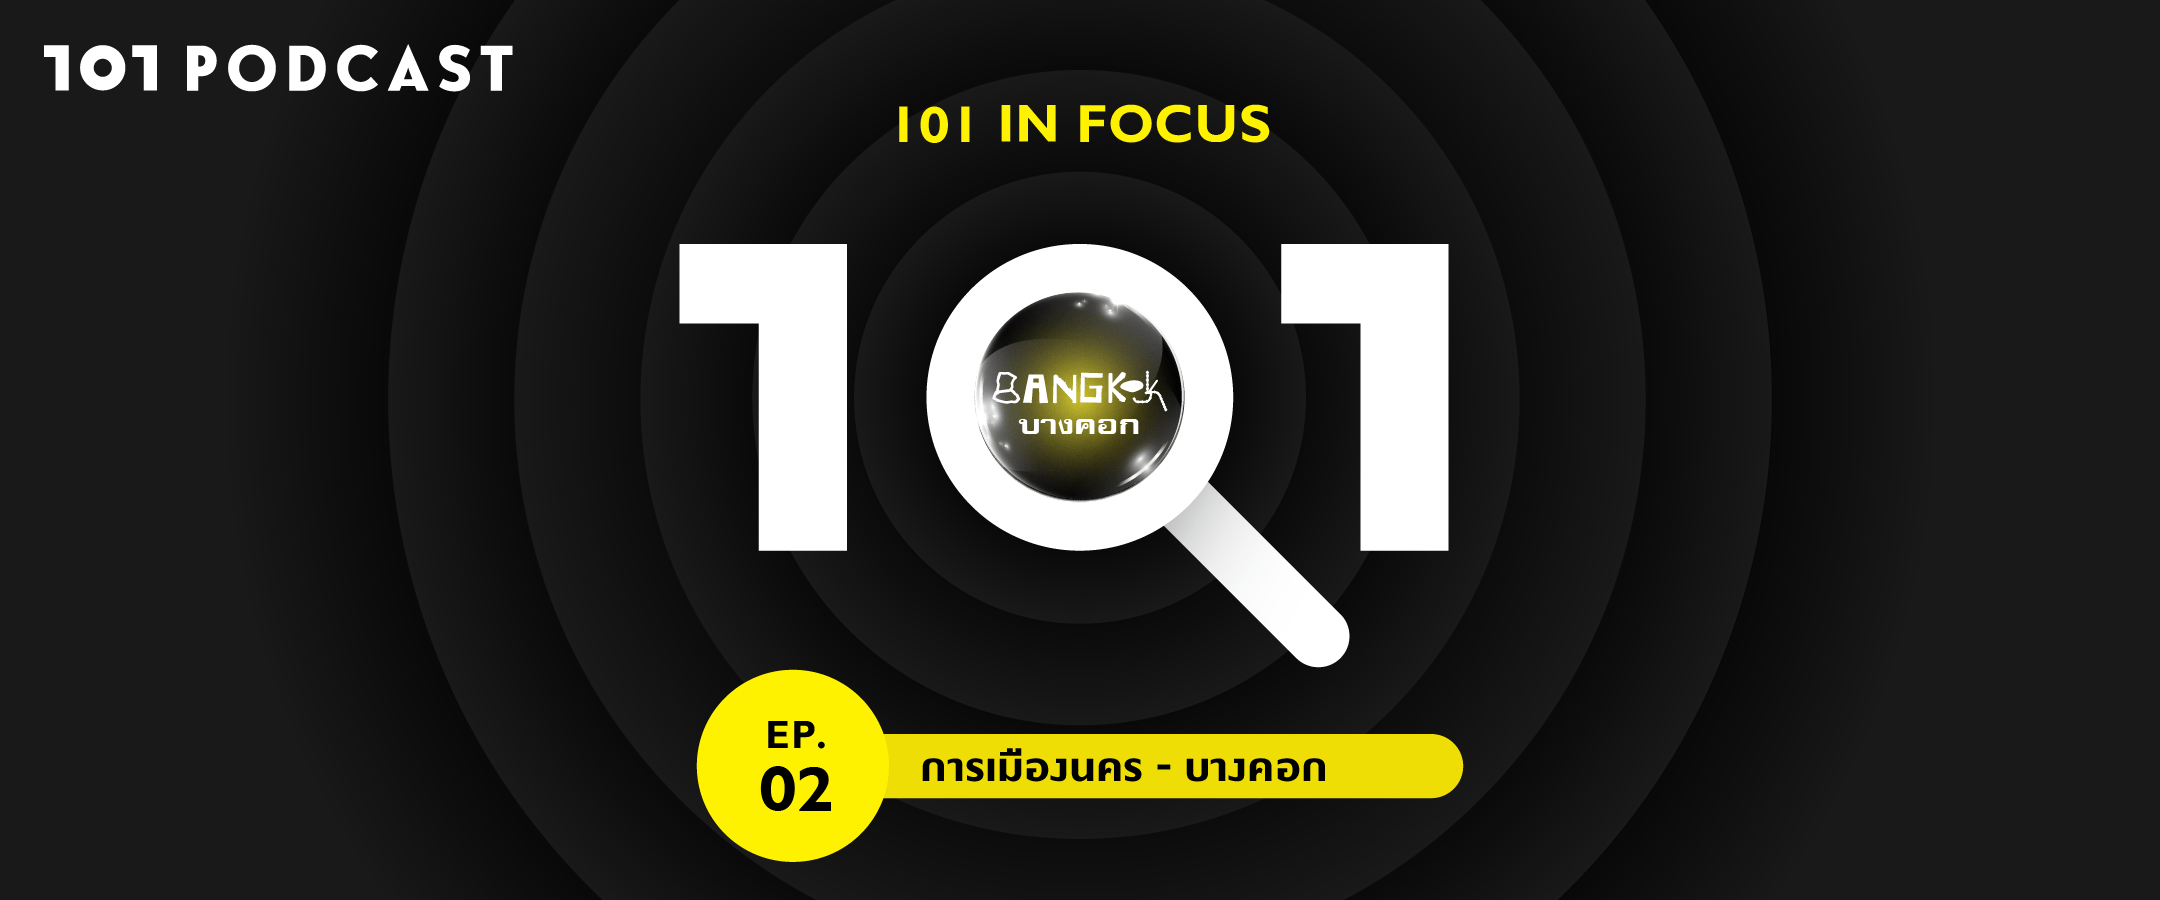 101 in focus EP.2 : “การเมืองนคร – บางคอก”